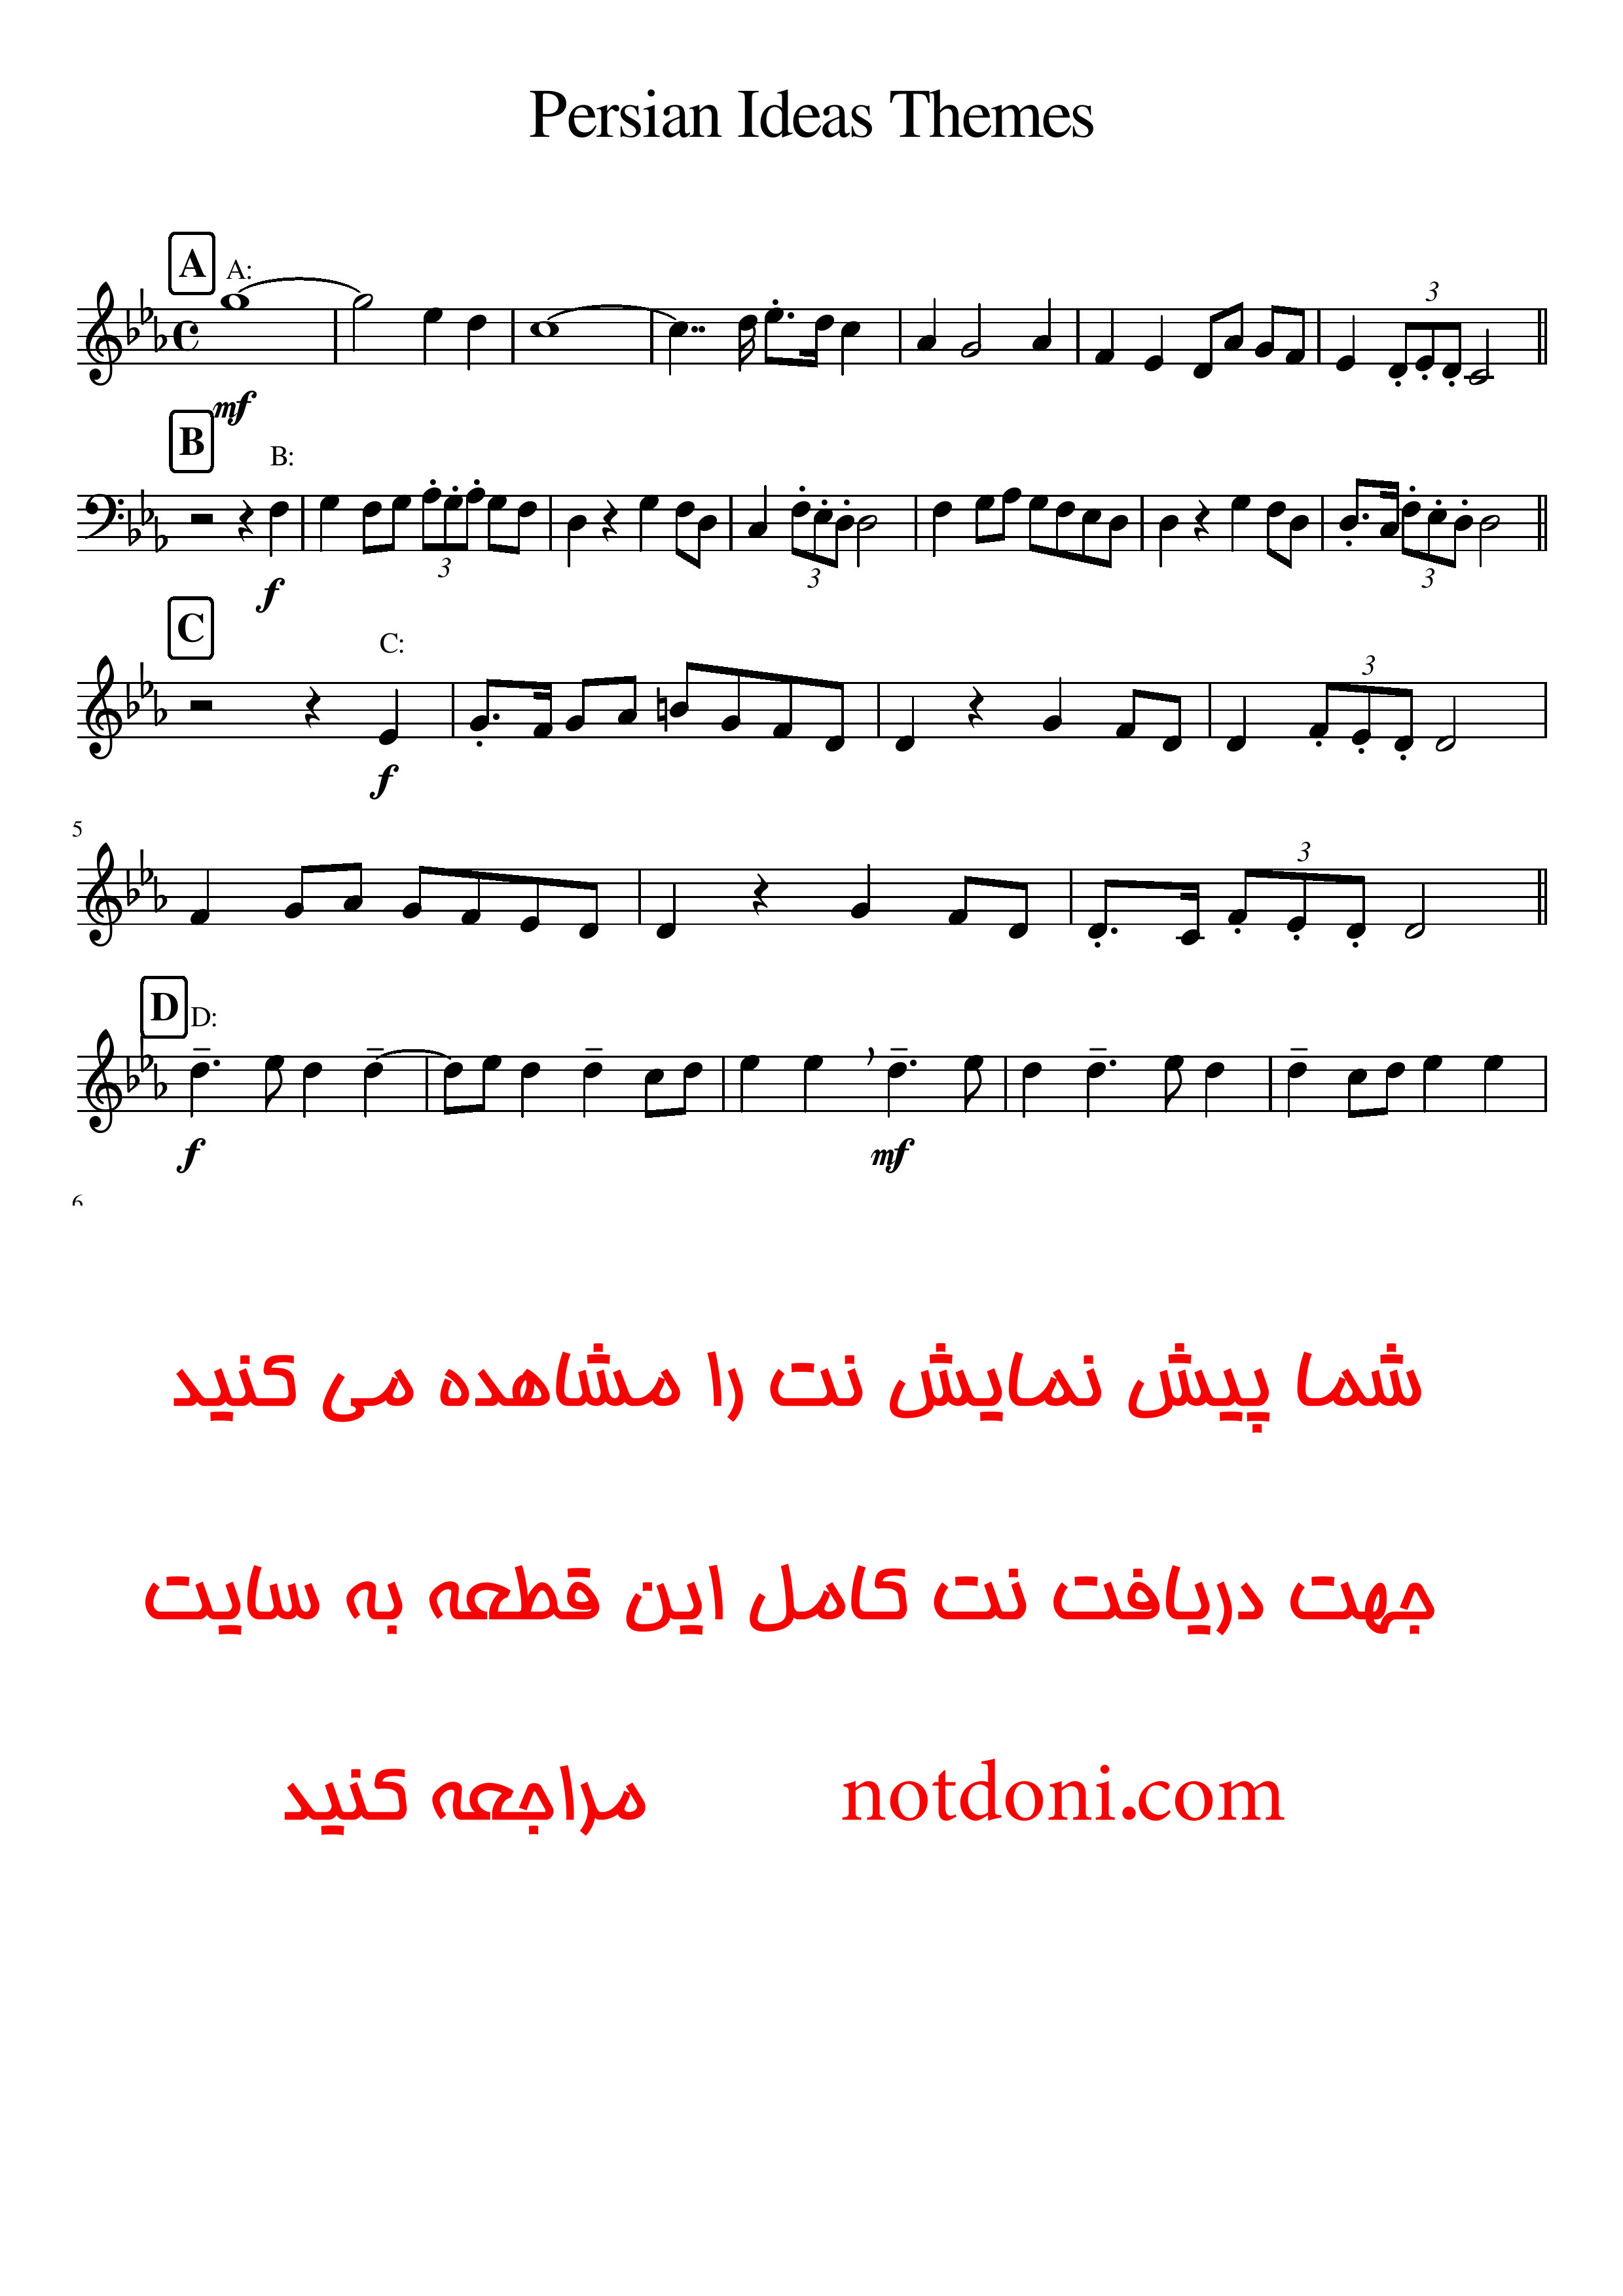 نت پیانوی Persian Ideas Themes